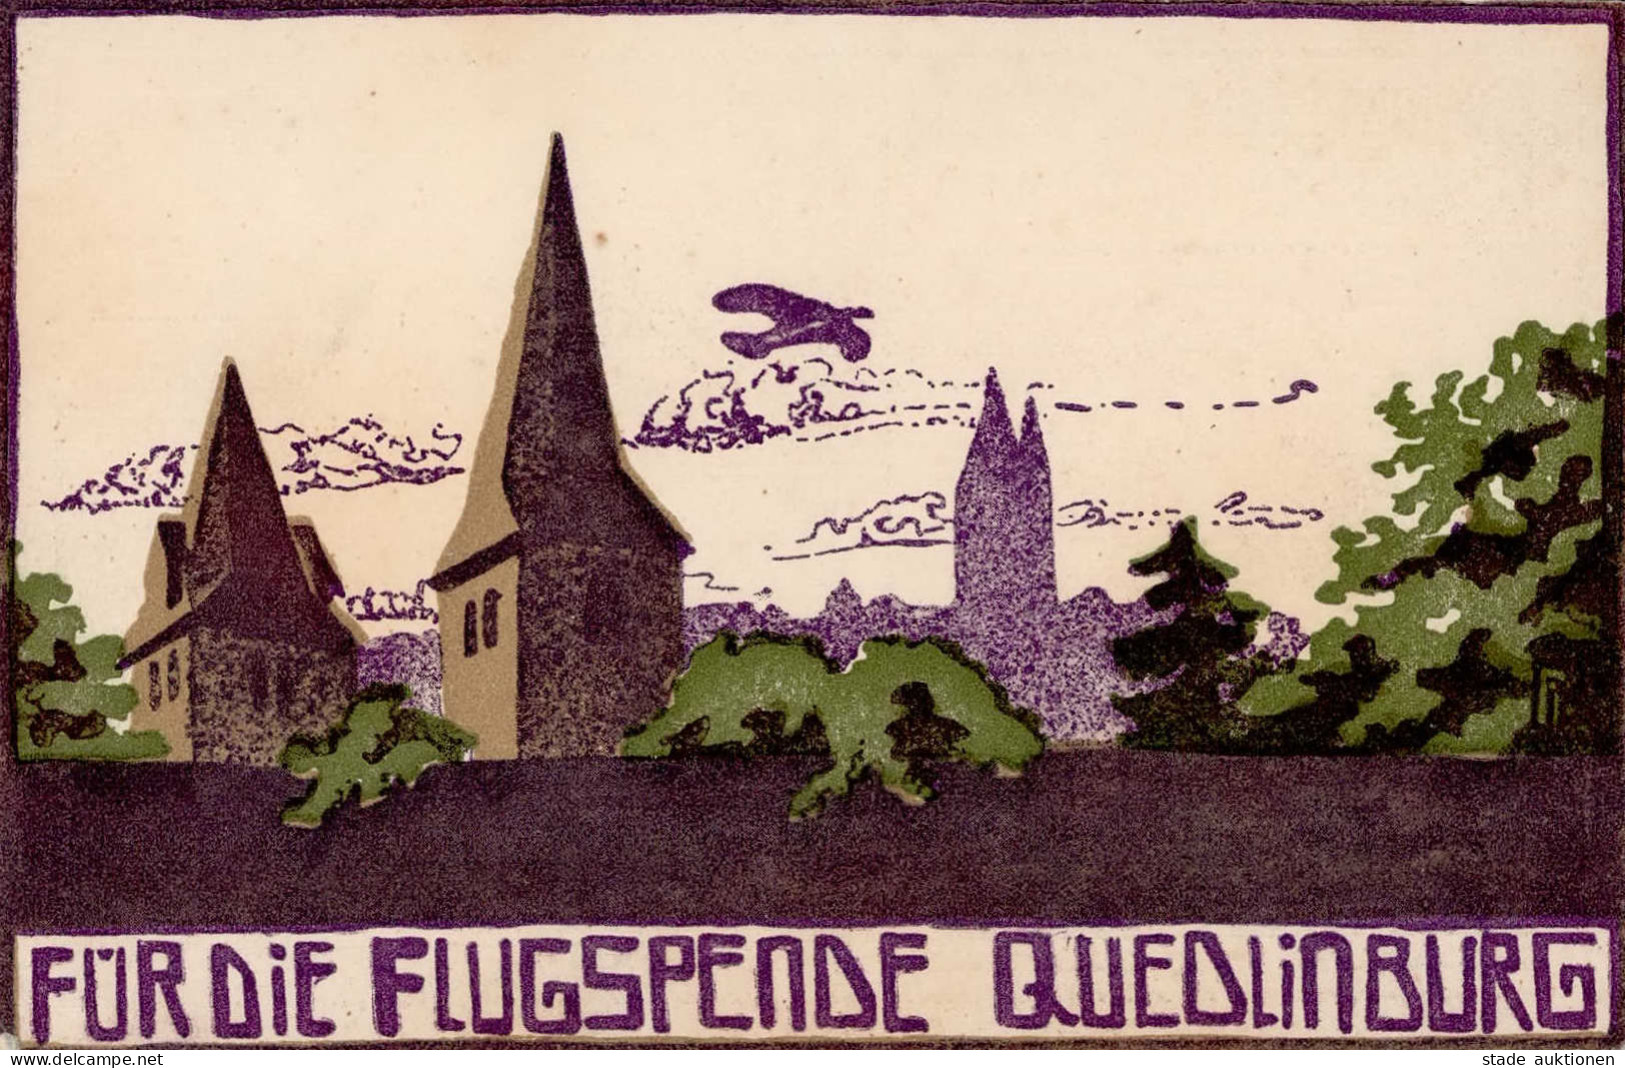 Flugereignis Quedlinburg Flugspendekarte Entworfen Milde, Dorothea I-II Aviation - Guerre 1914-18